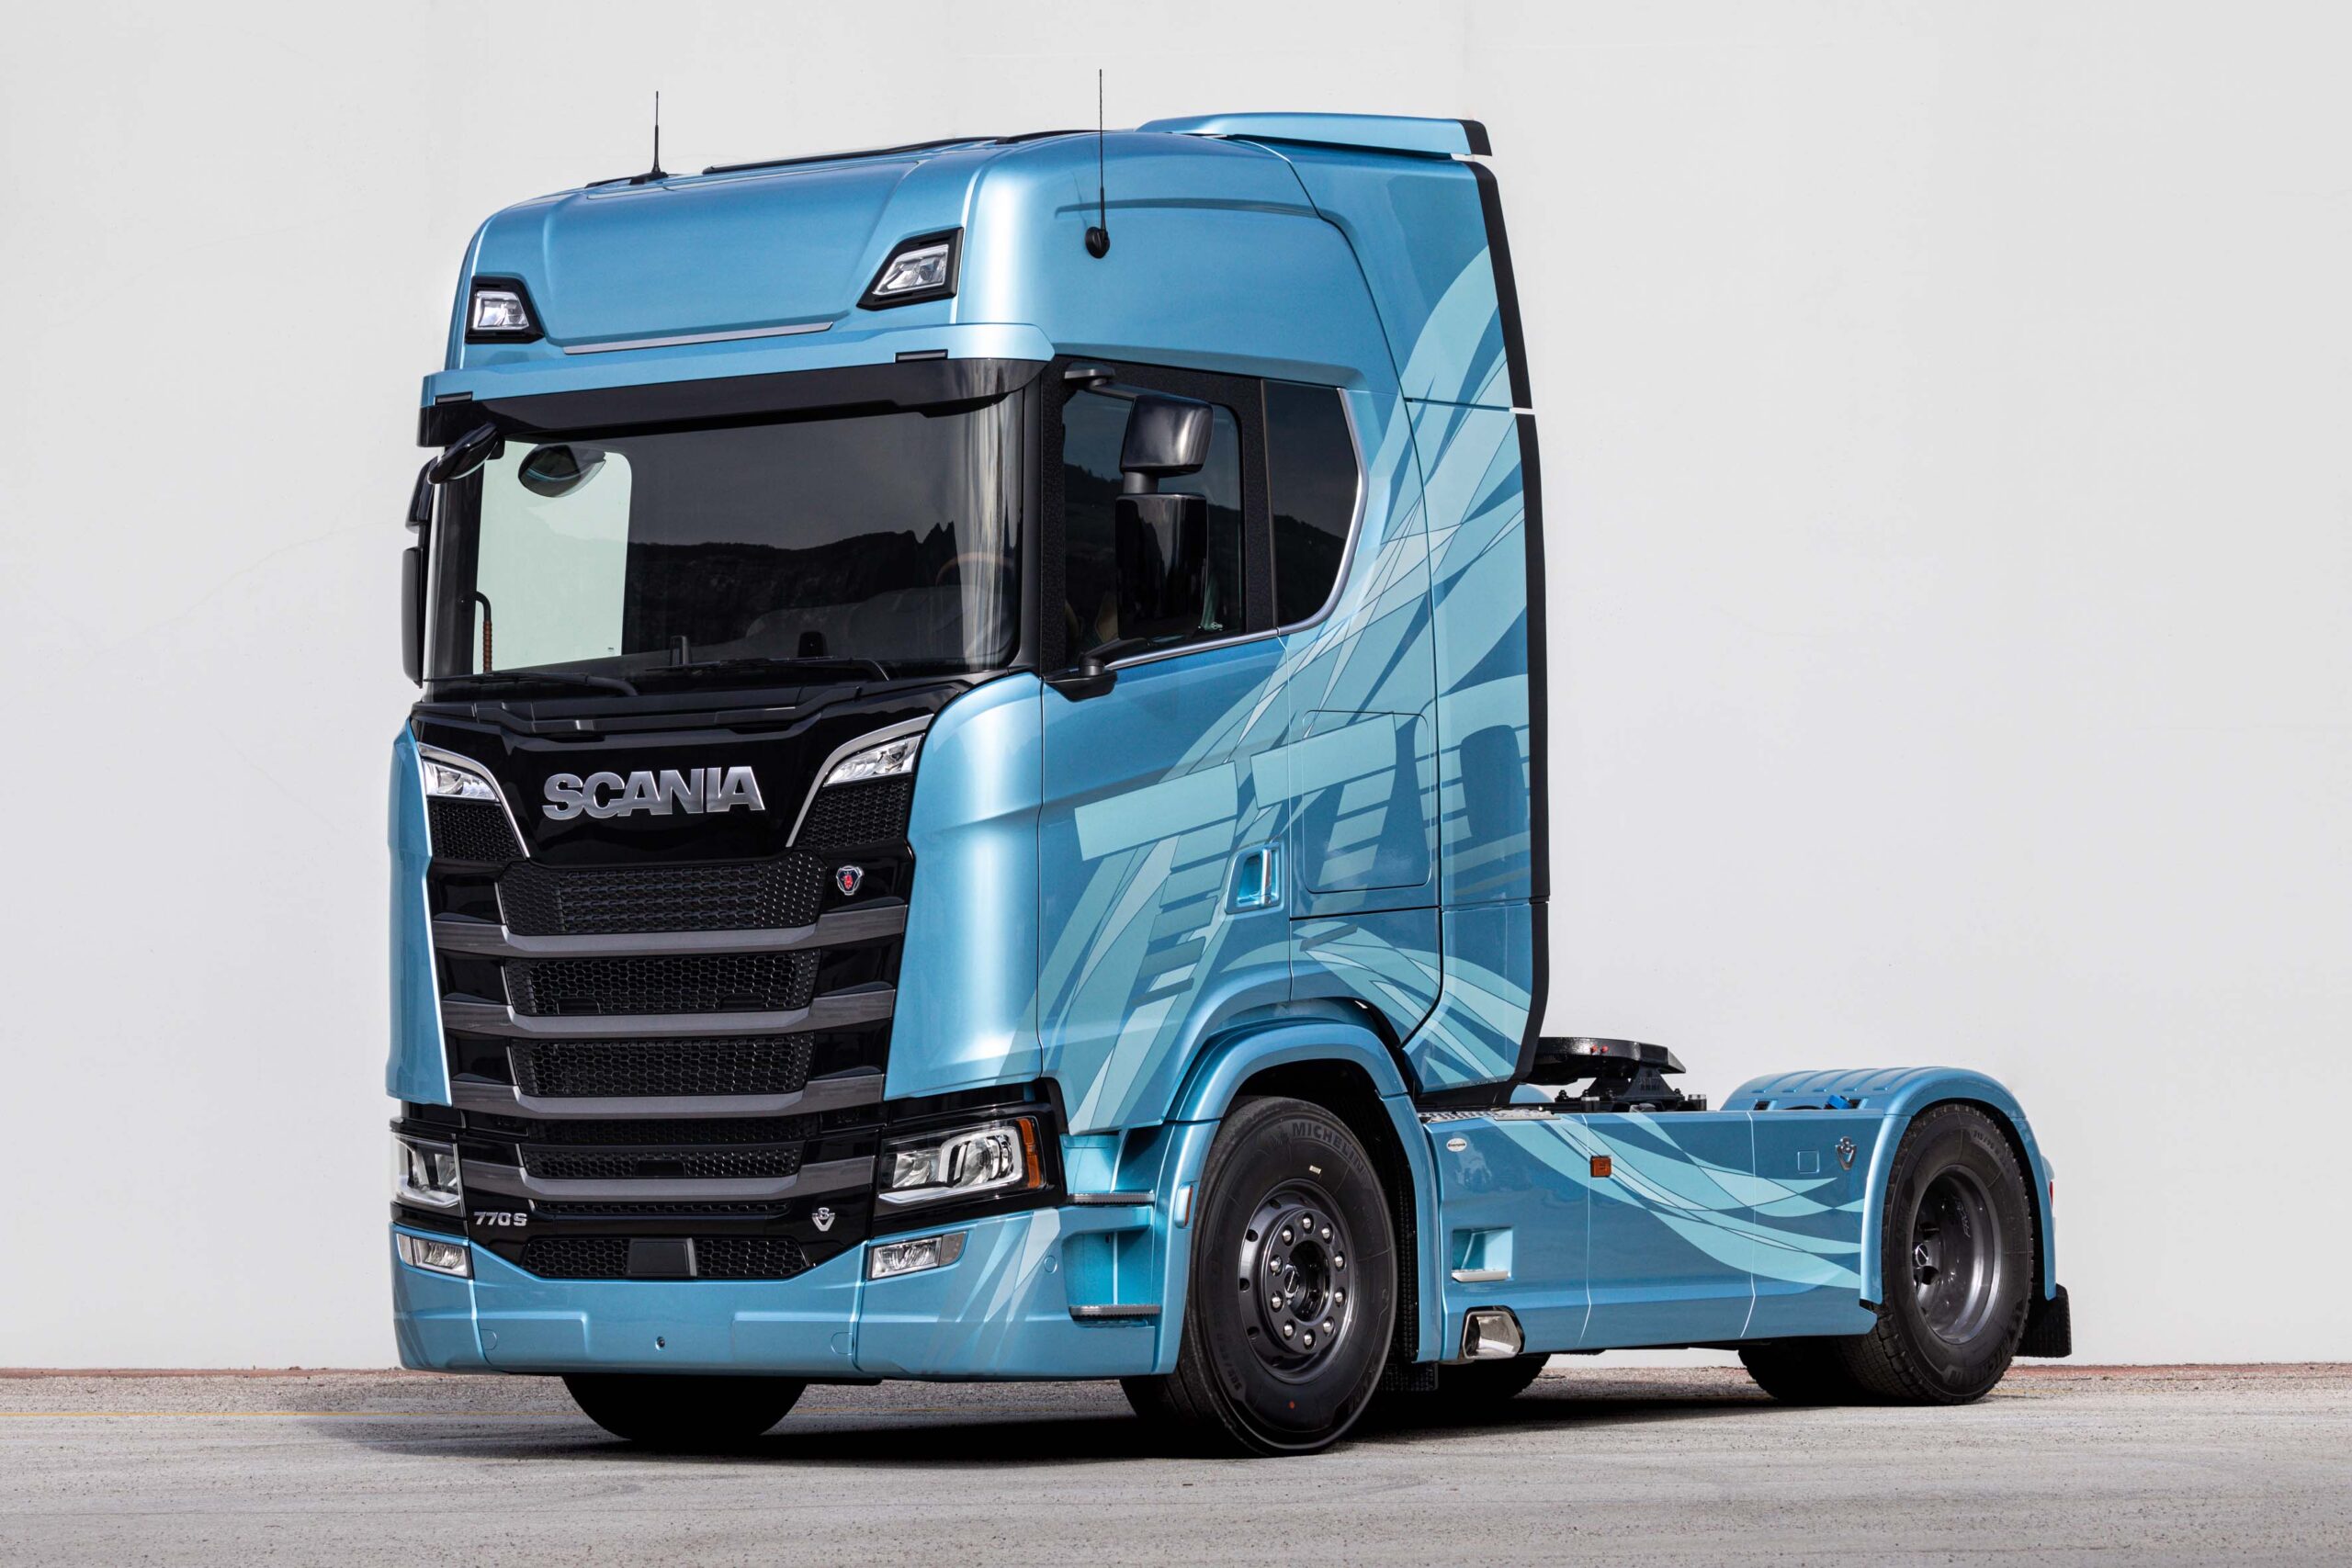 Scania celebra il motore V8 con la Frost Edition e lancia un’esclusiva edizione limitata